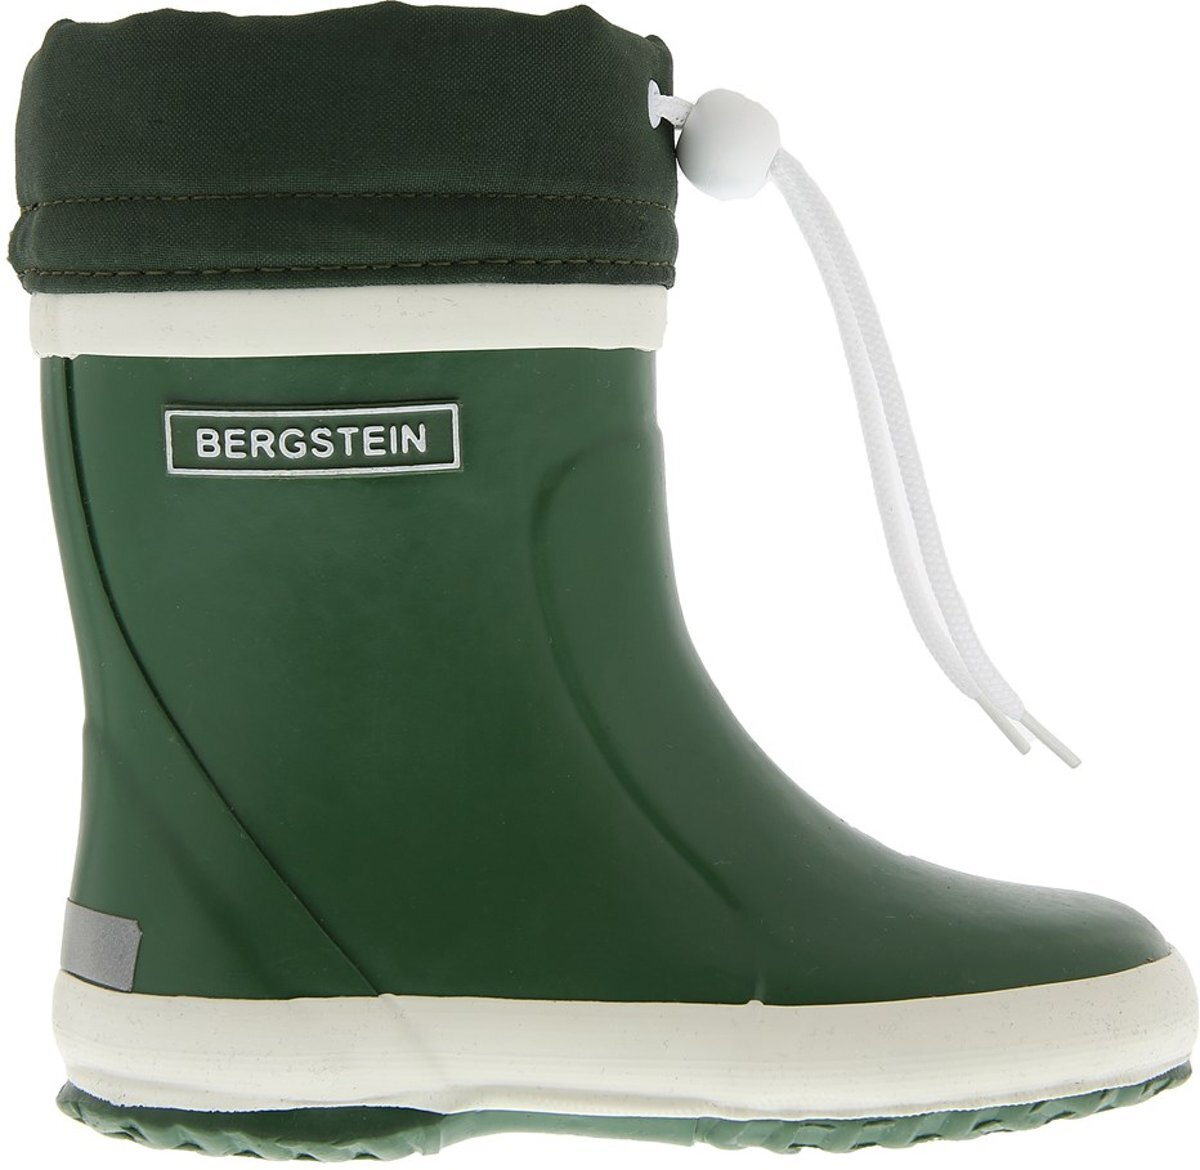 Bergstein Winterboot - Groen - Maat 19 groen